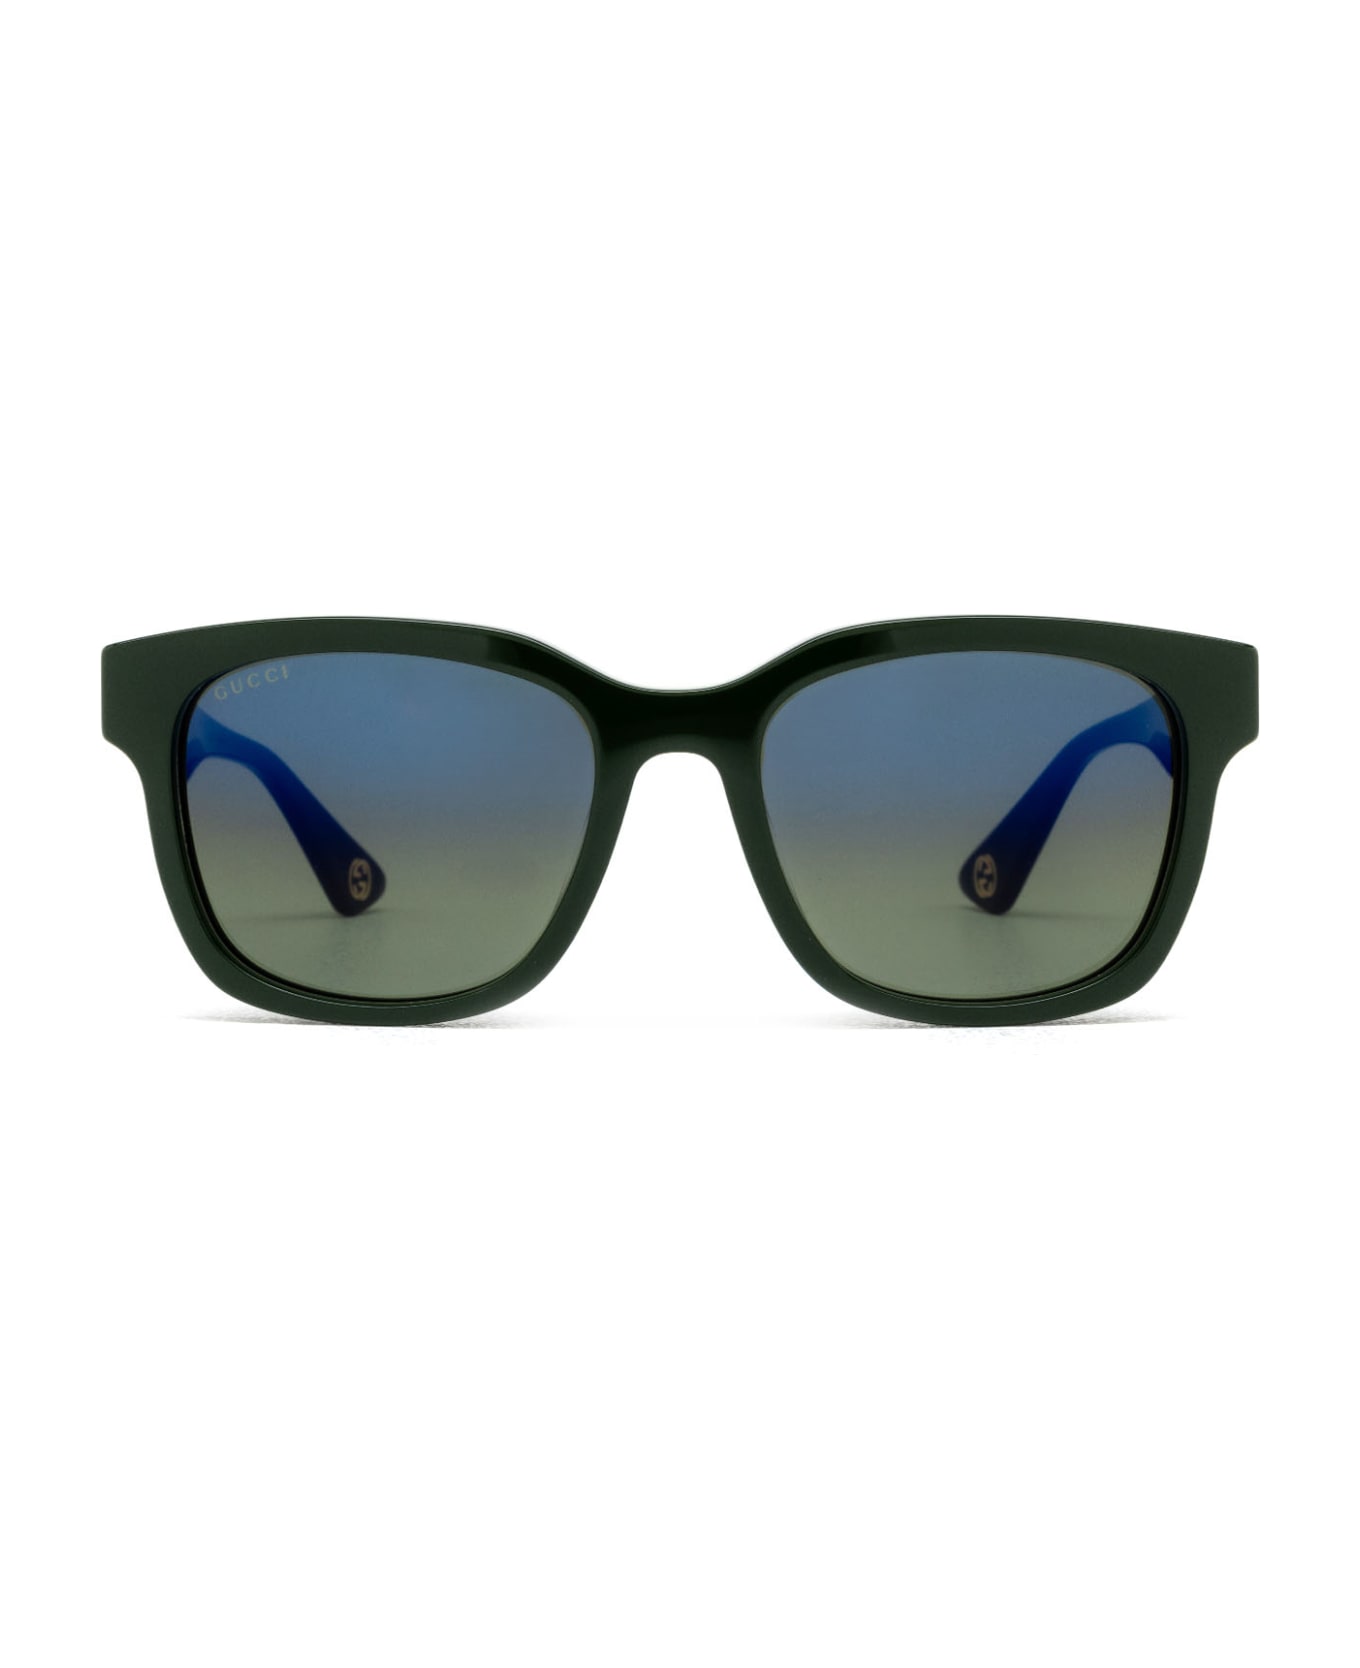 Gucci Eyewear Gg1639sa Green Sunglasses - Green